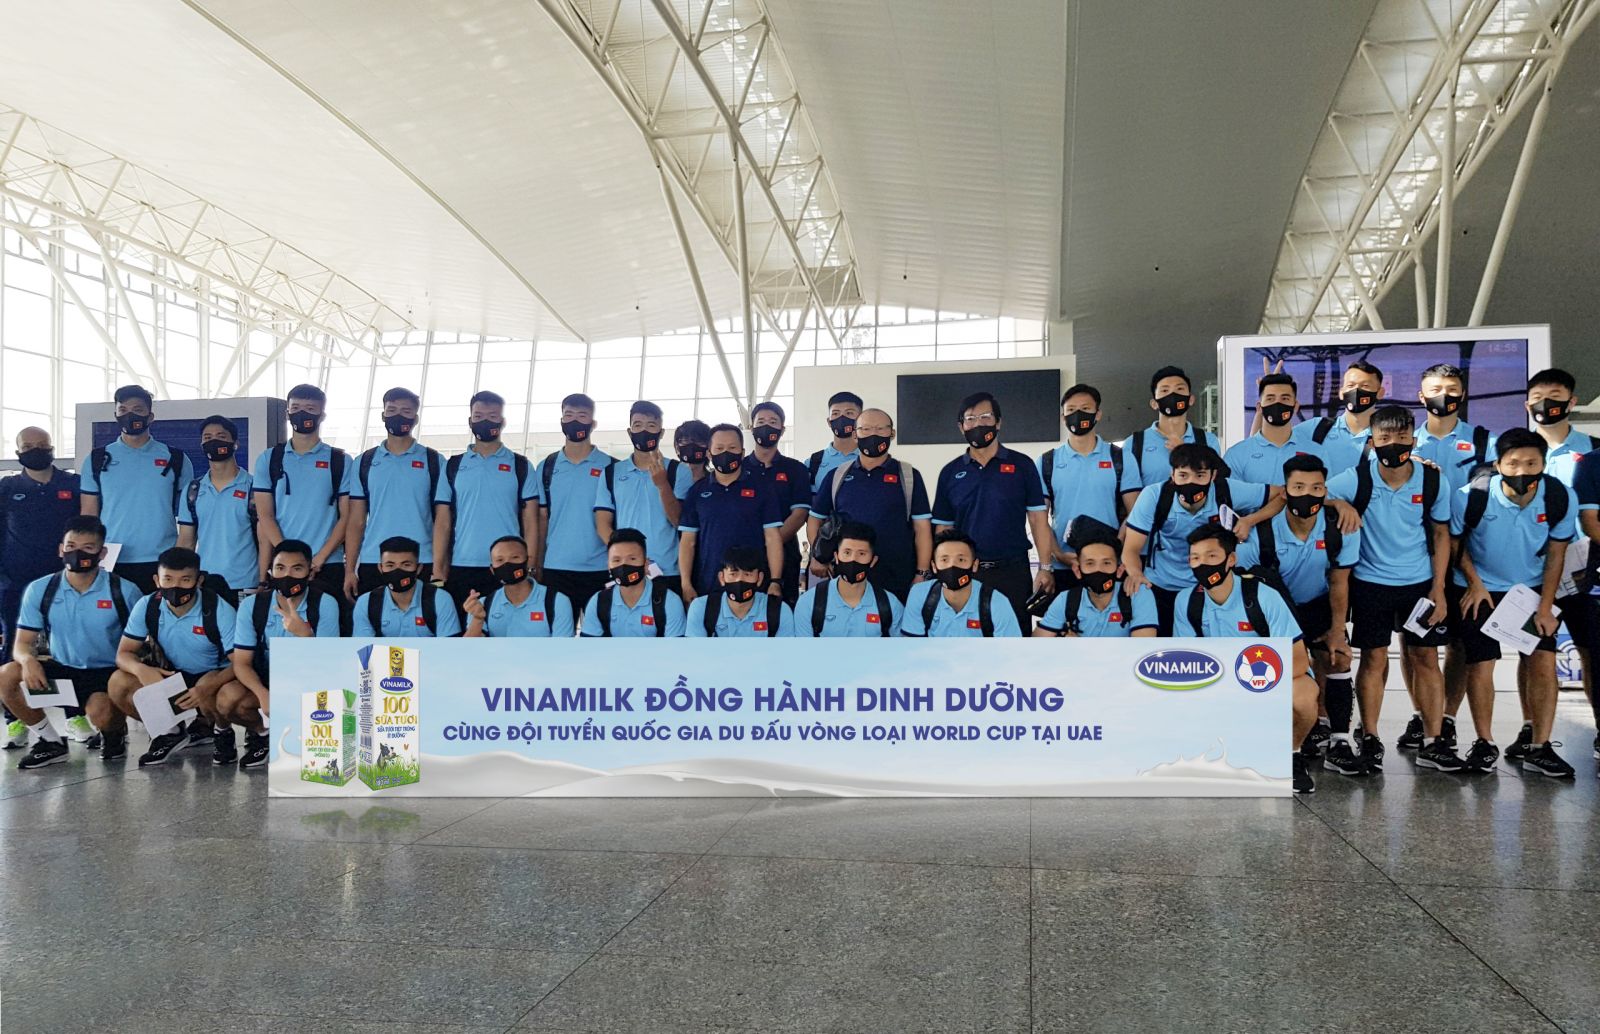 Sản phẩm Vinamilk đồng hành cùng đội tuyển khi tham gia du đấu tại UAE.